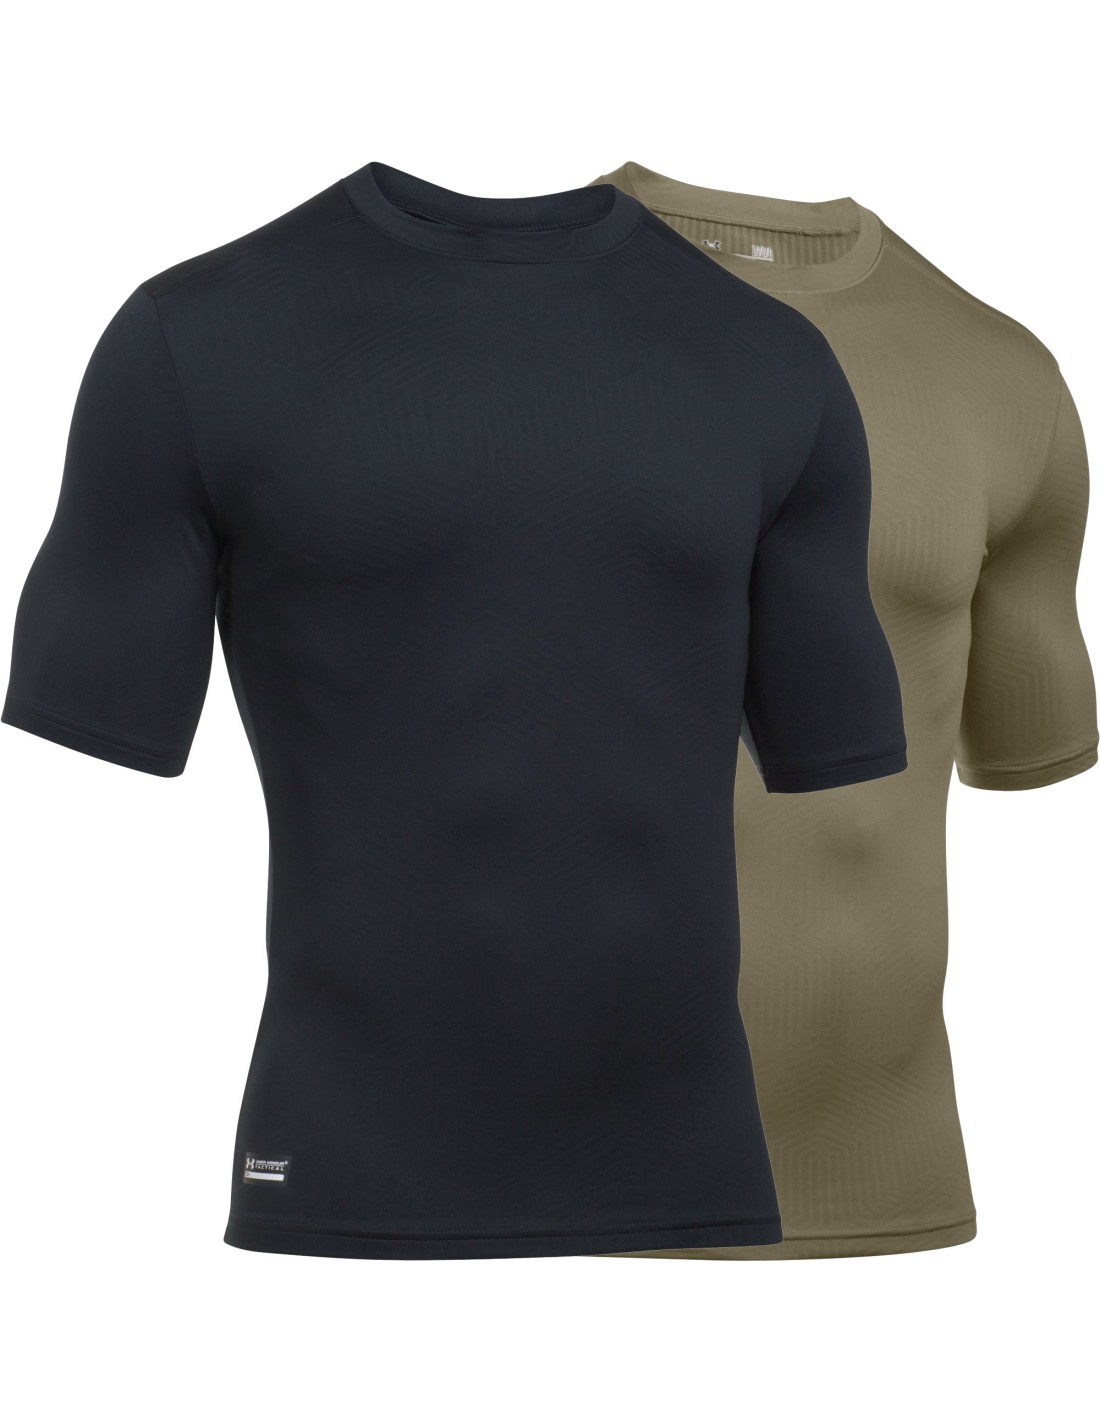 Under Armour® Tactical Herren T-Shirt Tech Tee ColdGear®Infrared